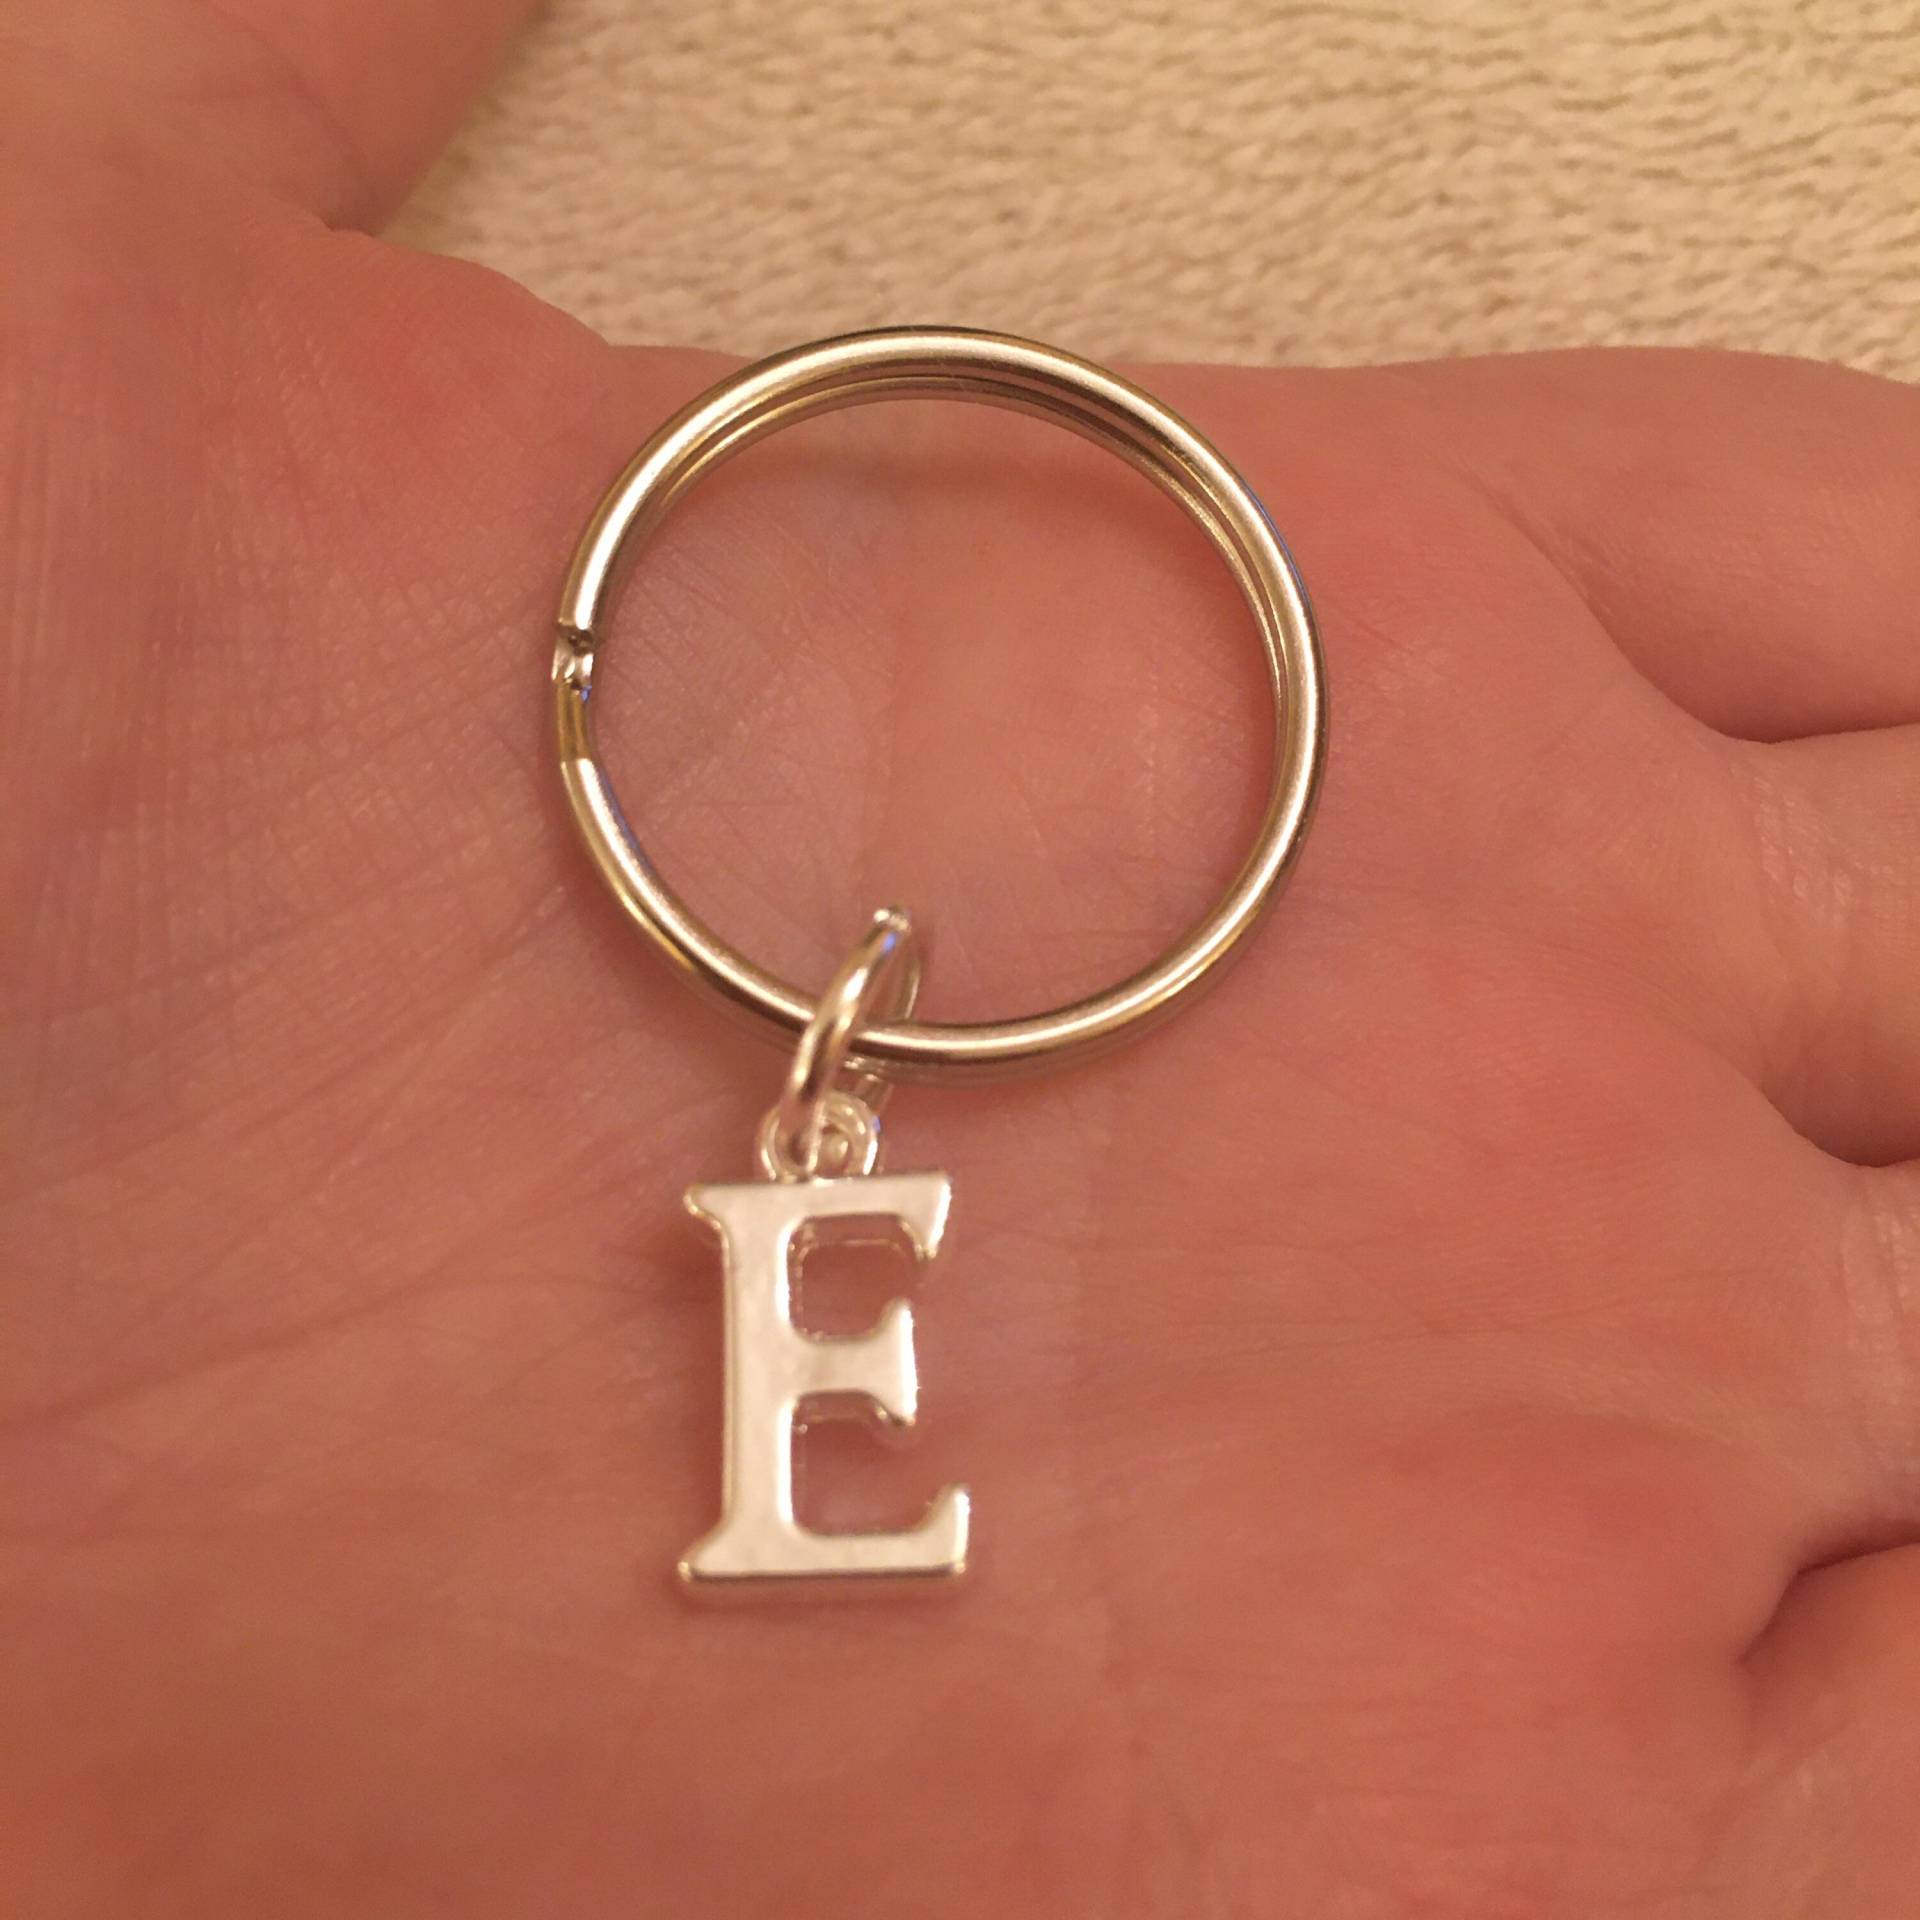 Silberner Schlüsselring Mit Anfangsbuchstaben, Personalisierter Schlüsselring, Anfangsschlüsselring, Buchstabenschlüsselring von LooseTheLock